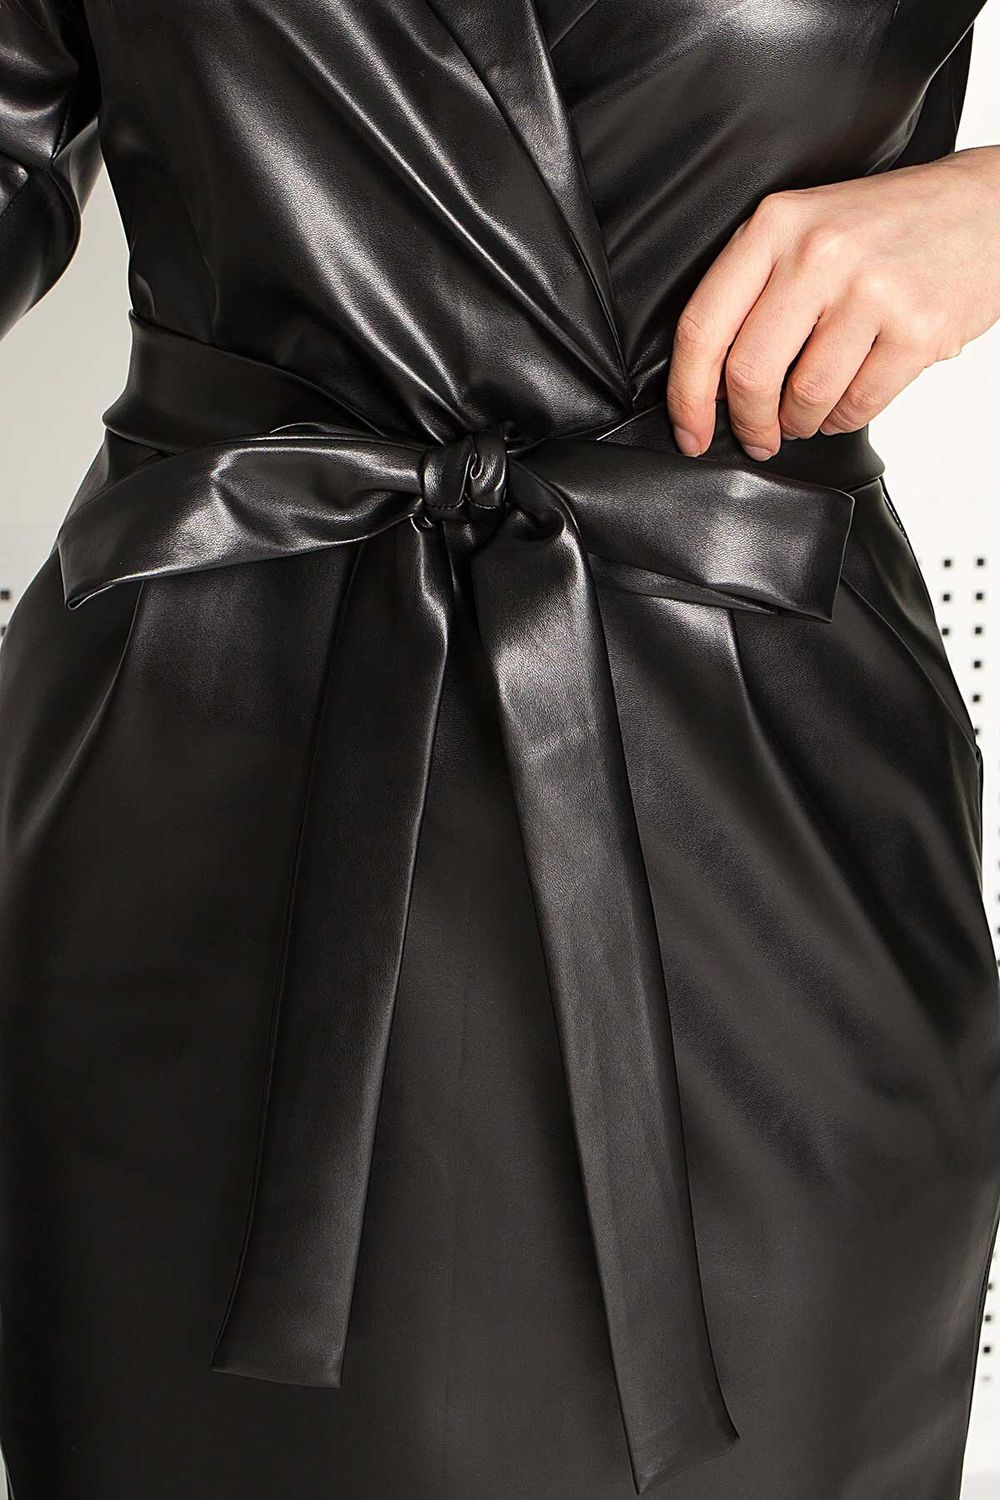 Кожаное платье в деловом стиле черное - фото